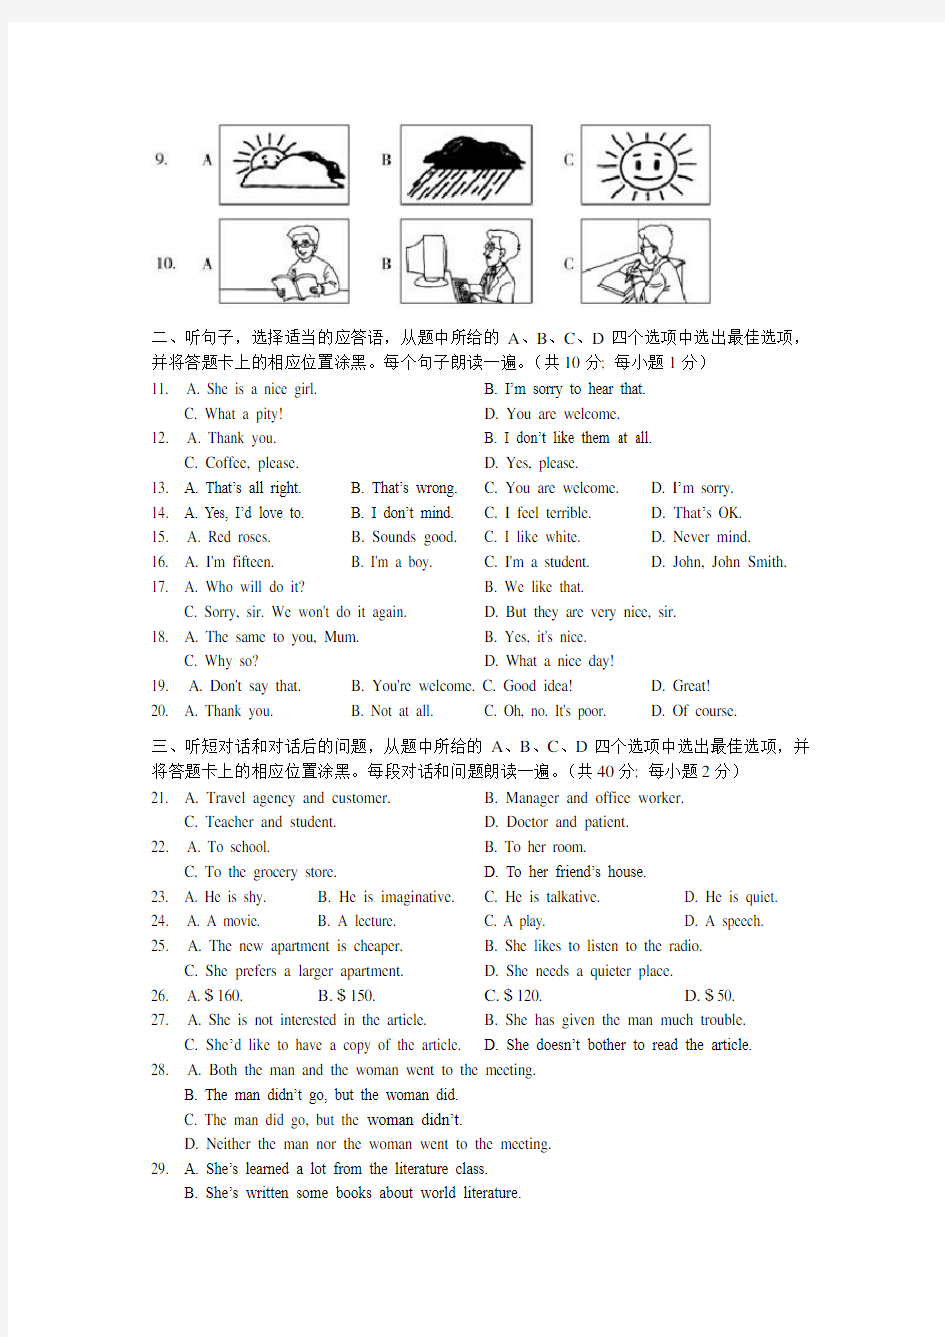 通讯杯上海市中小学生英语听力活动中学组考卷(附答案)